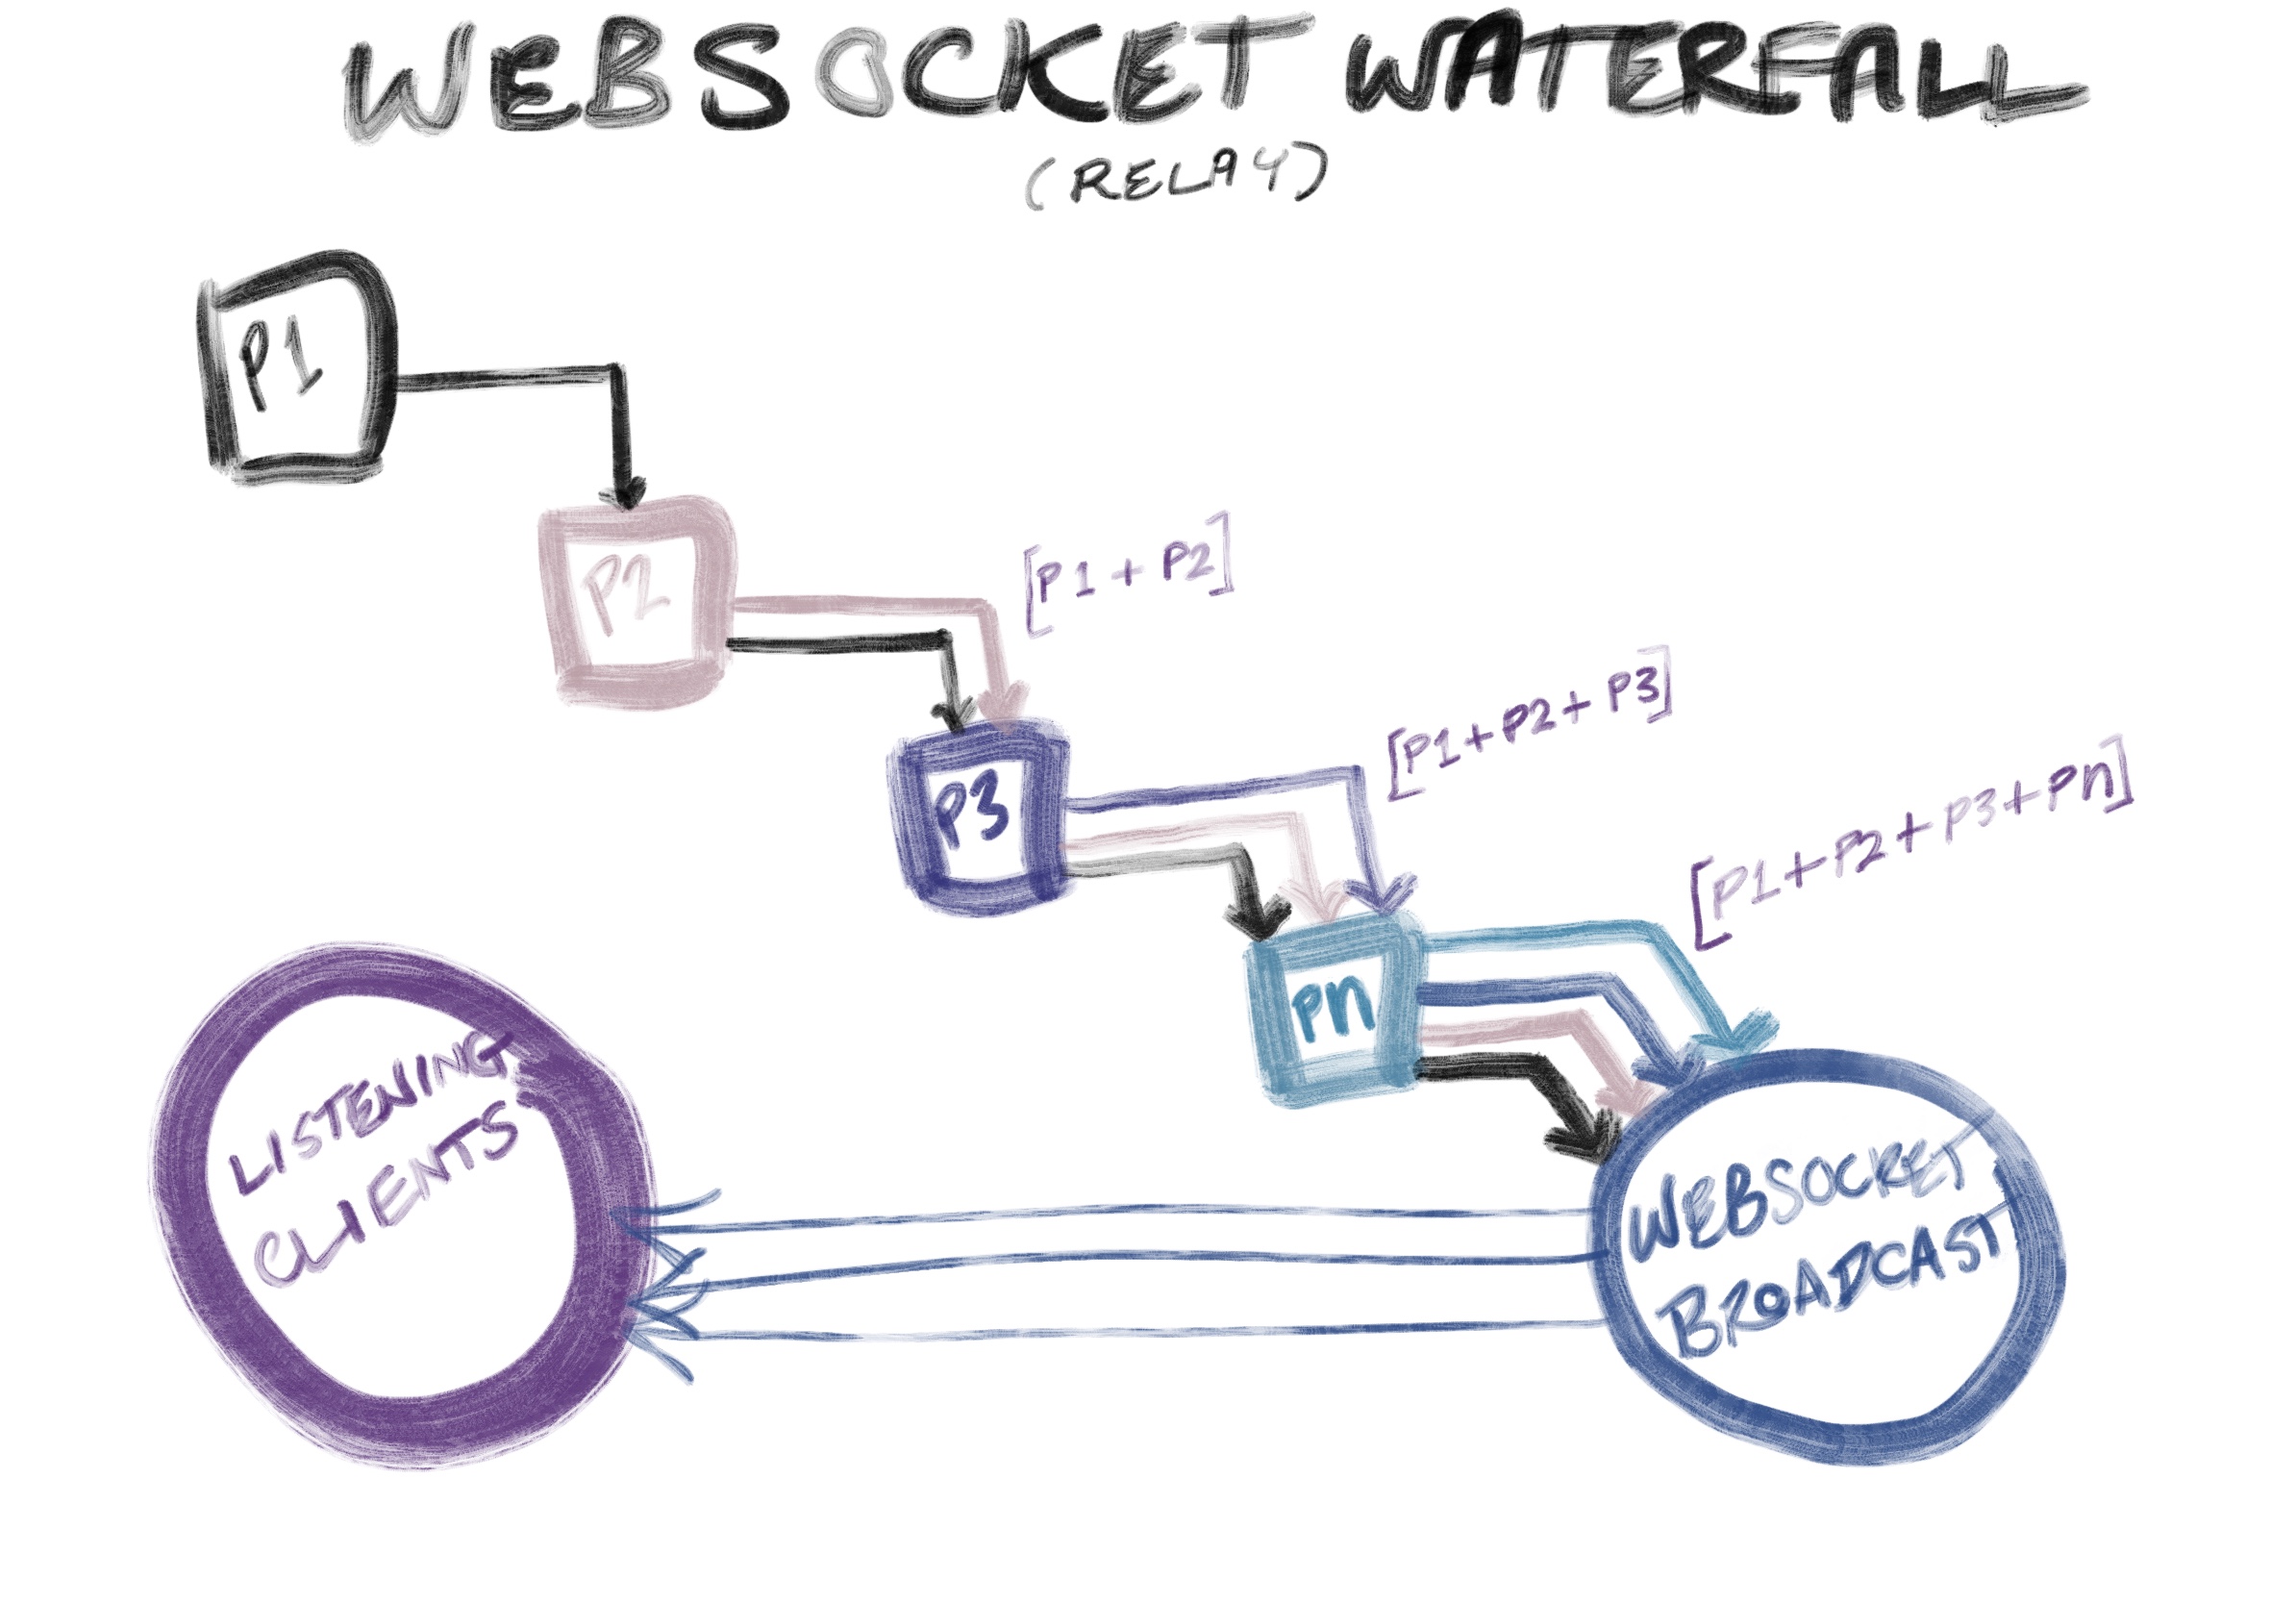 Websocket Waterfall